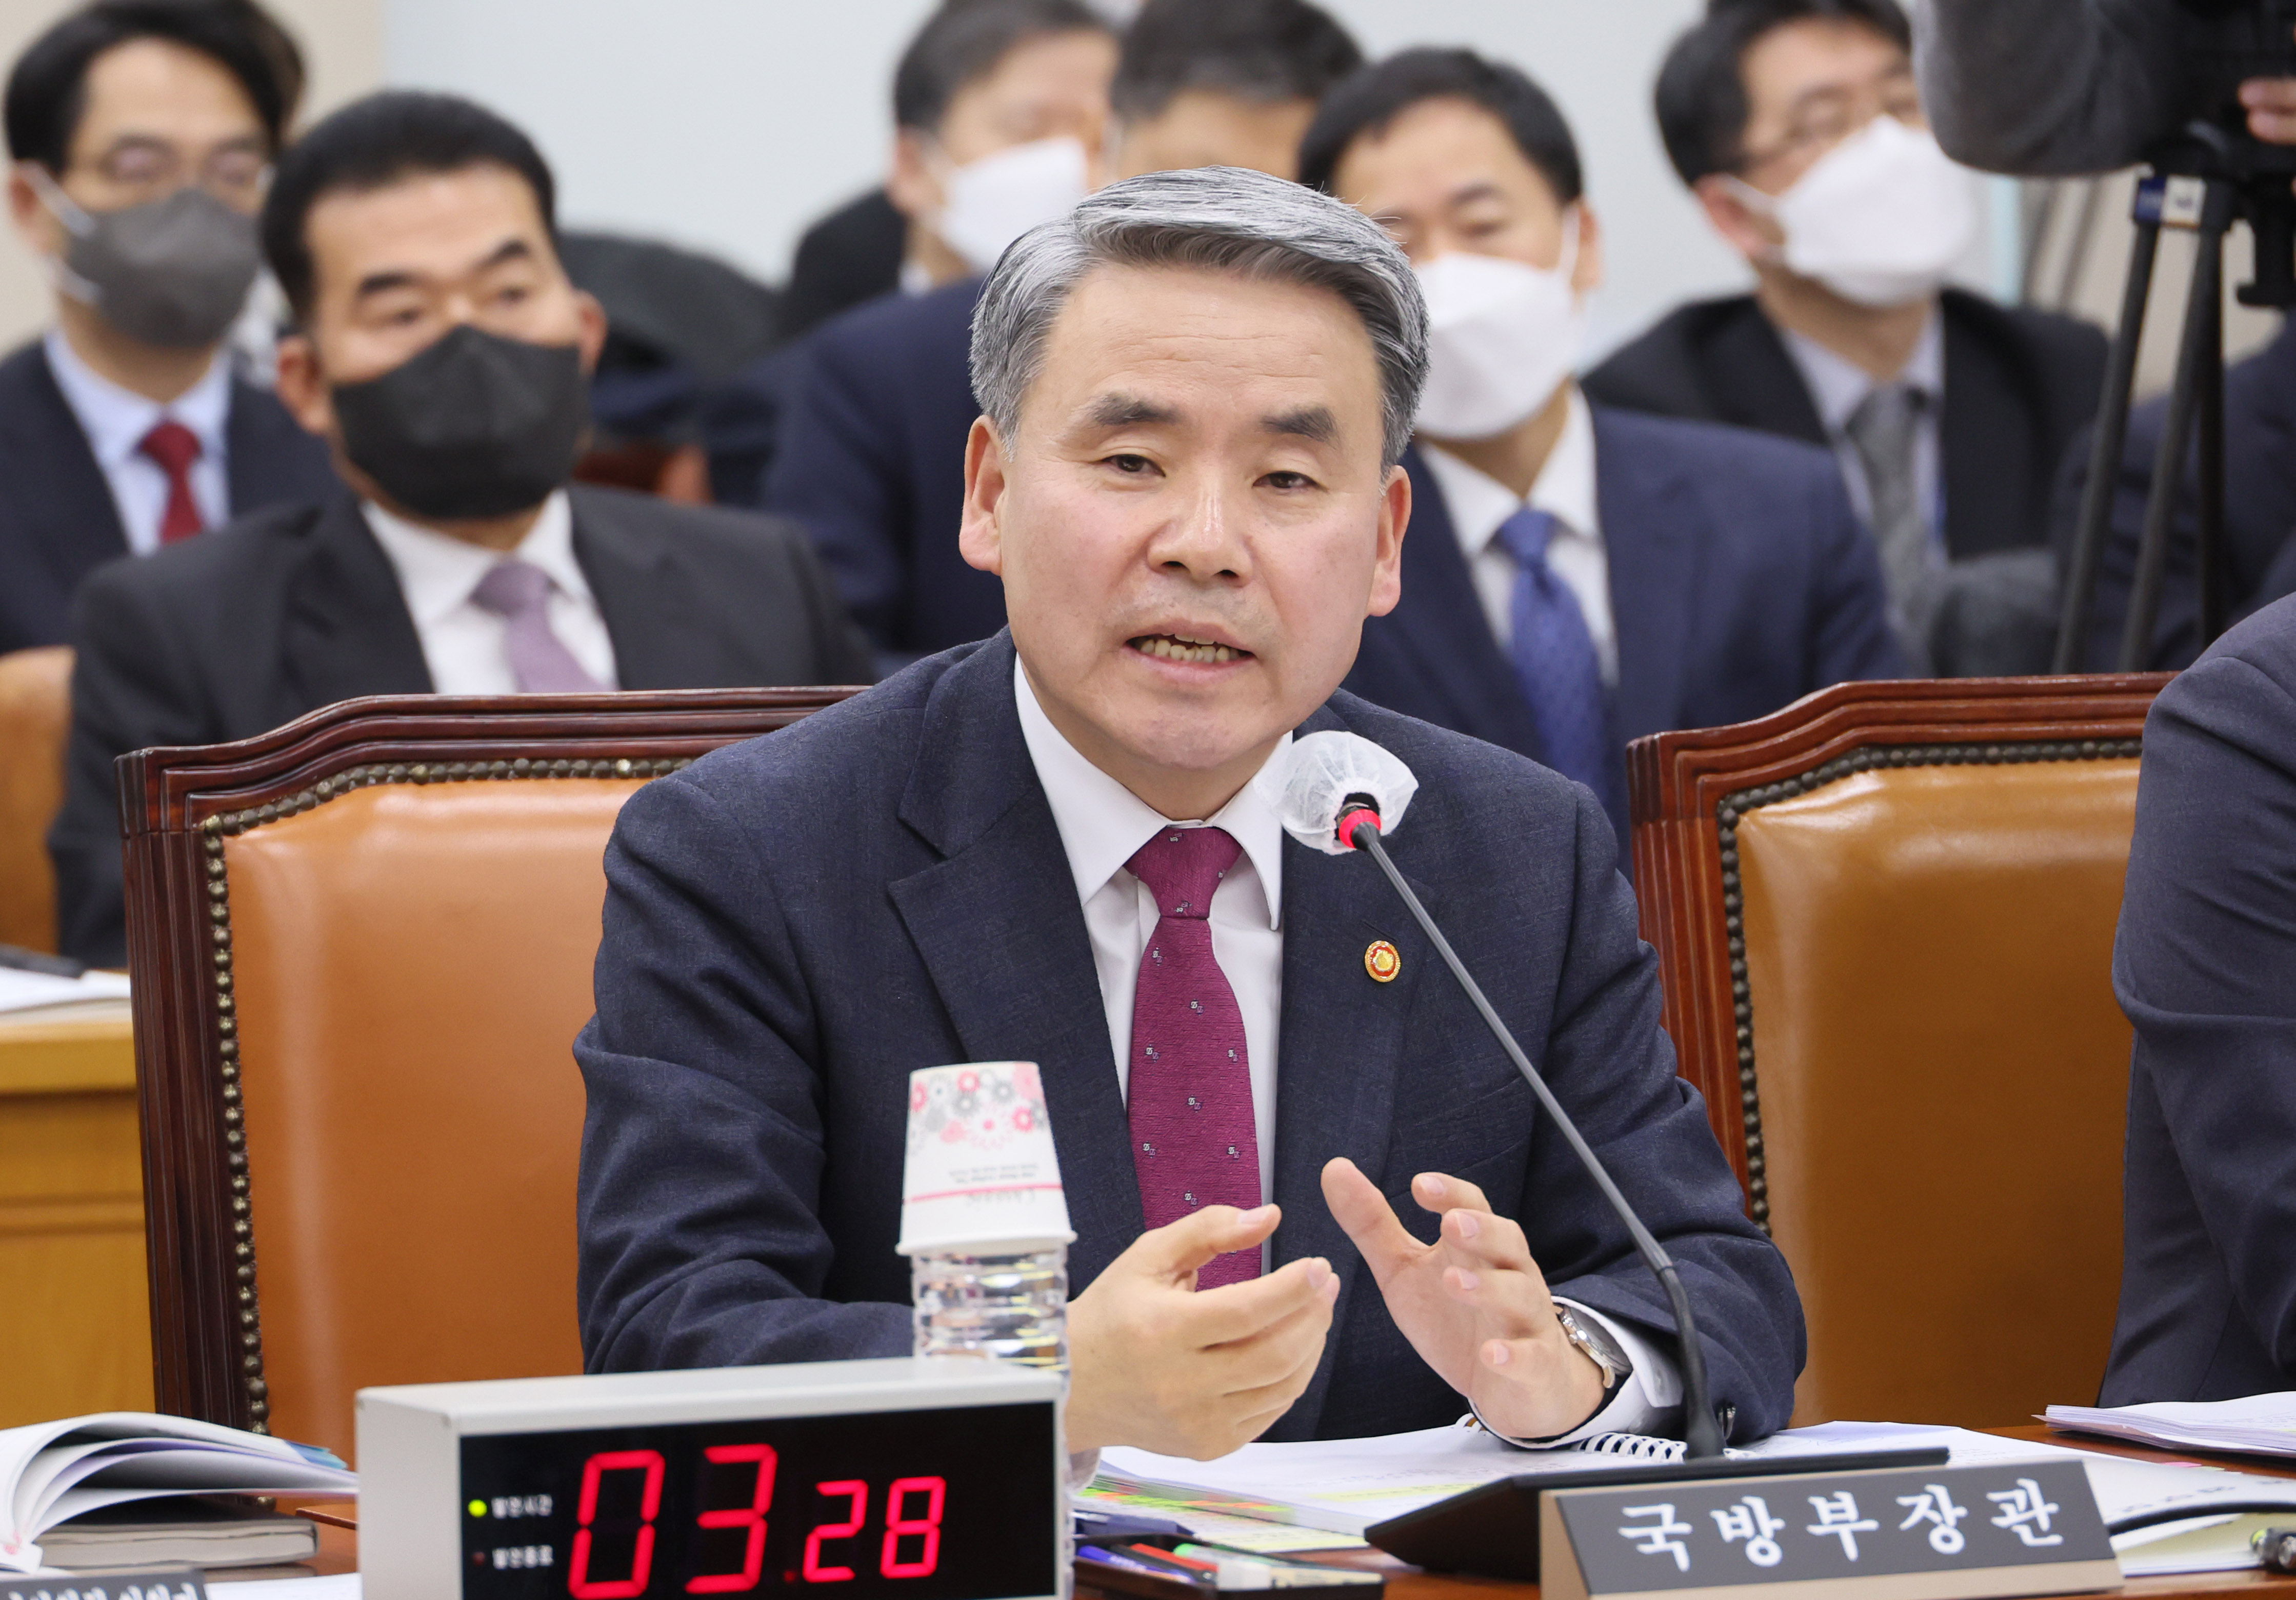 ‘천공’ 관련 질의에 답변하는 이종섭 국방부 장관